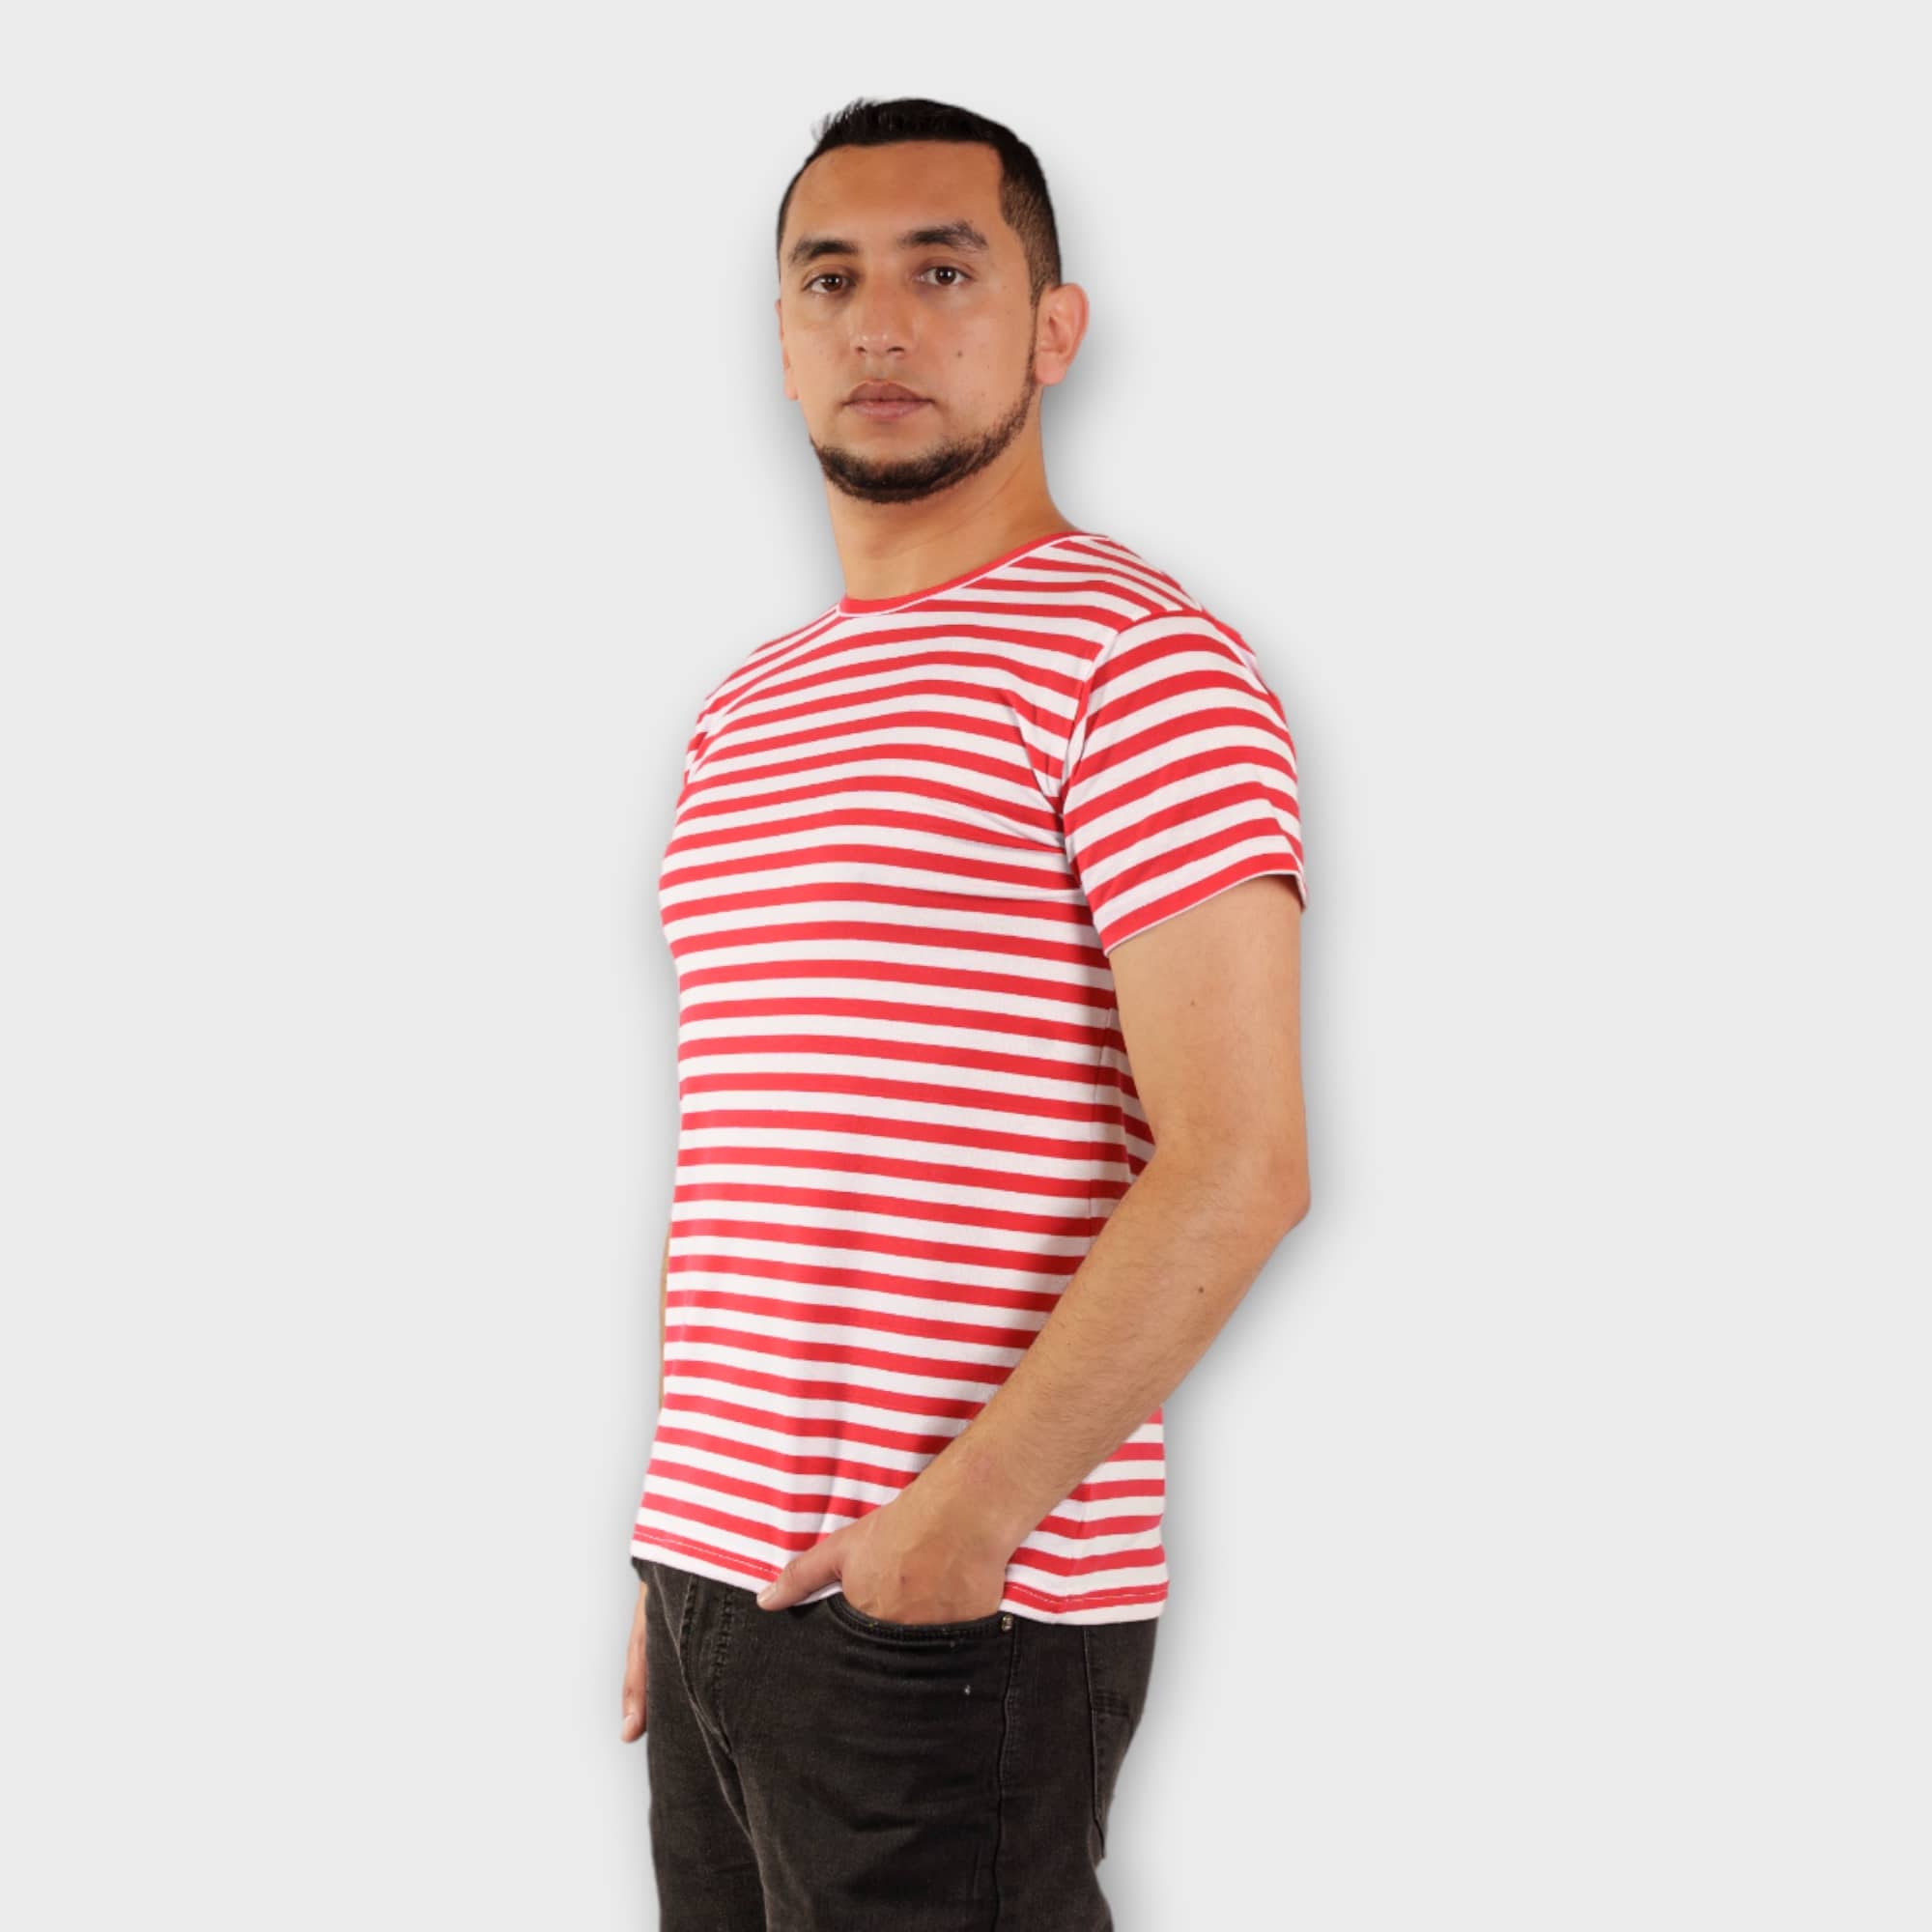 Camiseta de rayas rojas y blancas con un espacio en blanco para tu texto.